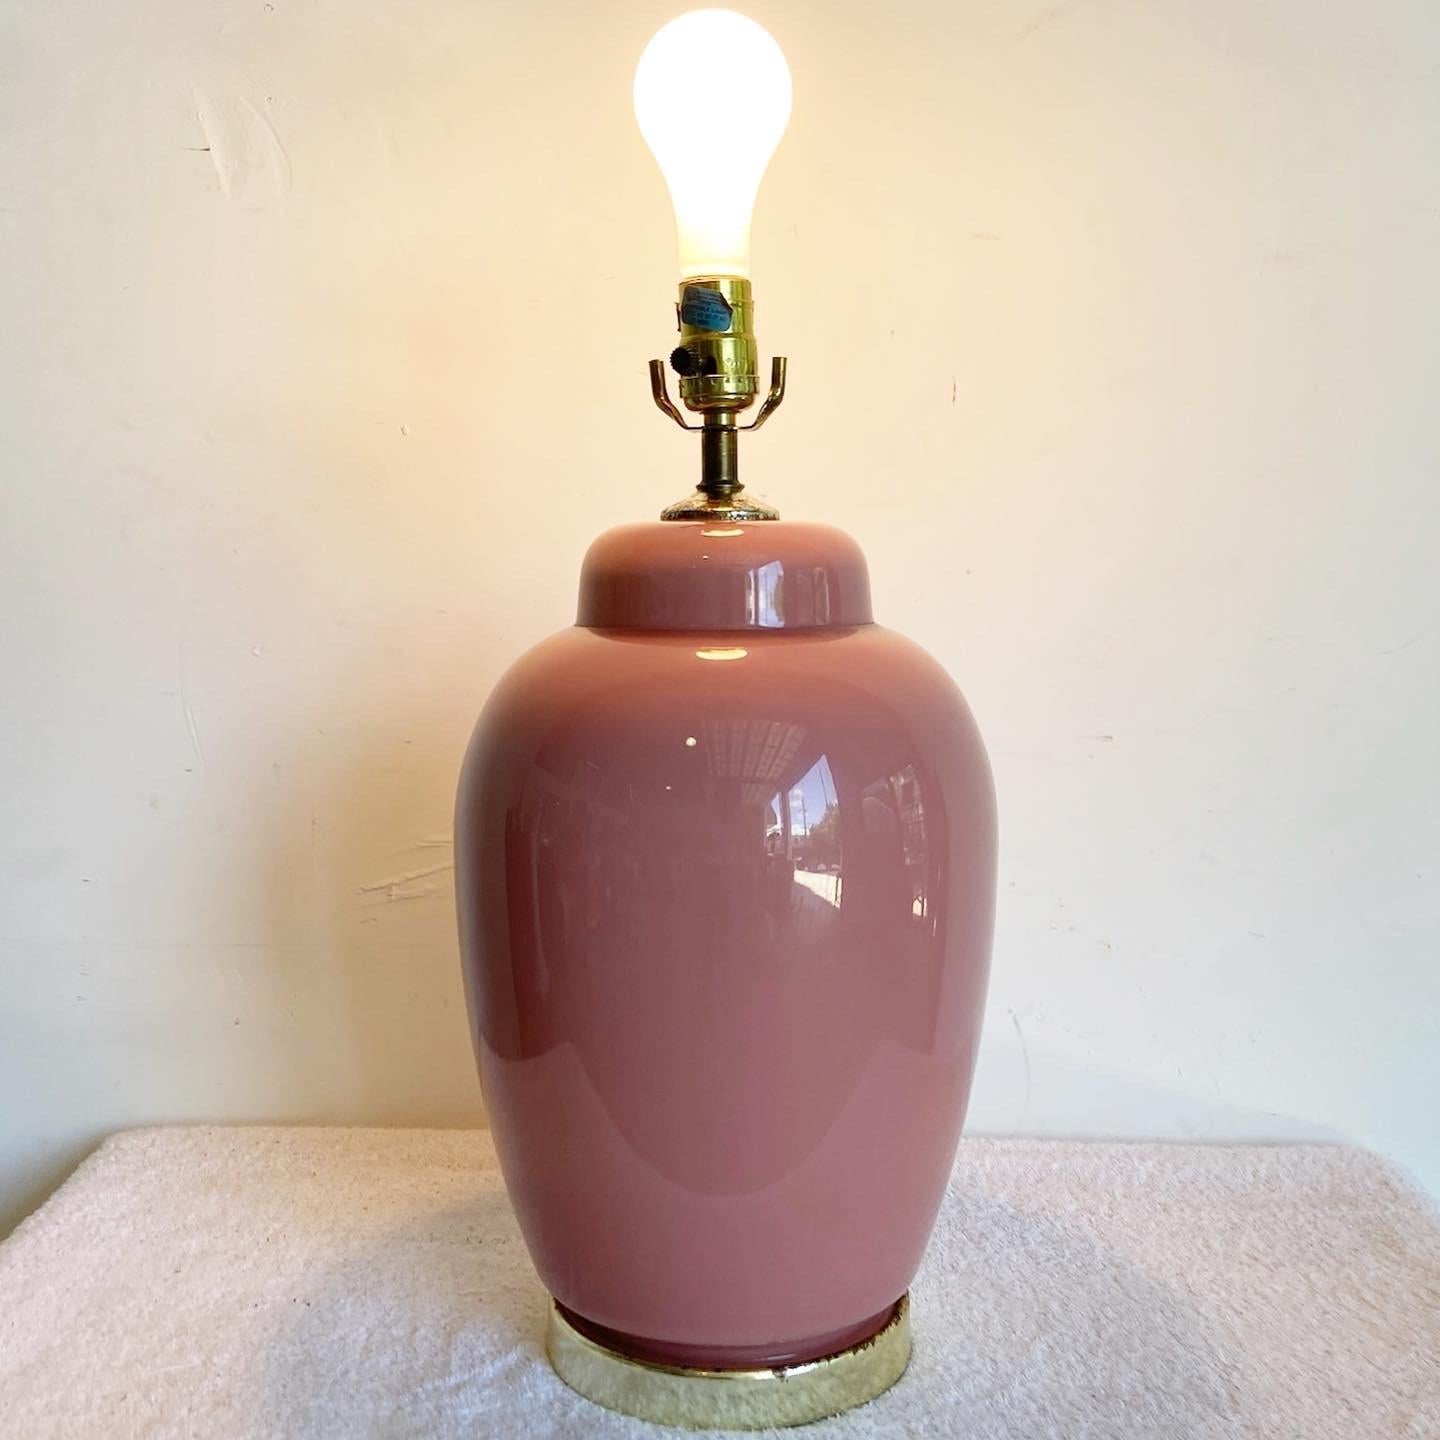 Voici notre lampe à poser postmoderne en céramique rose brillante, un mélange de design contemporain et d'esthétique élégante. Dotée d'une élégante base en céramique rose vif, cette lampe compacte ajoute une touche de couleur sophistiquée à